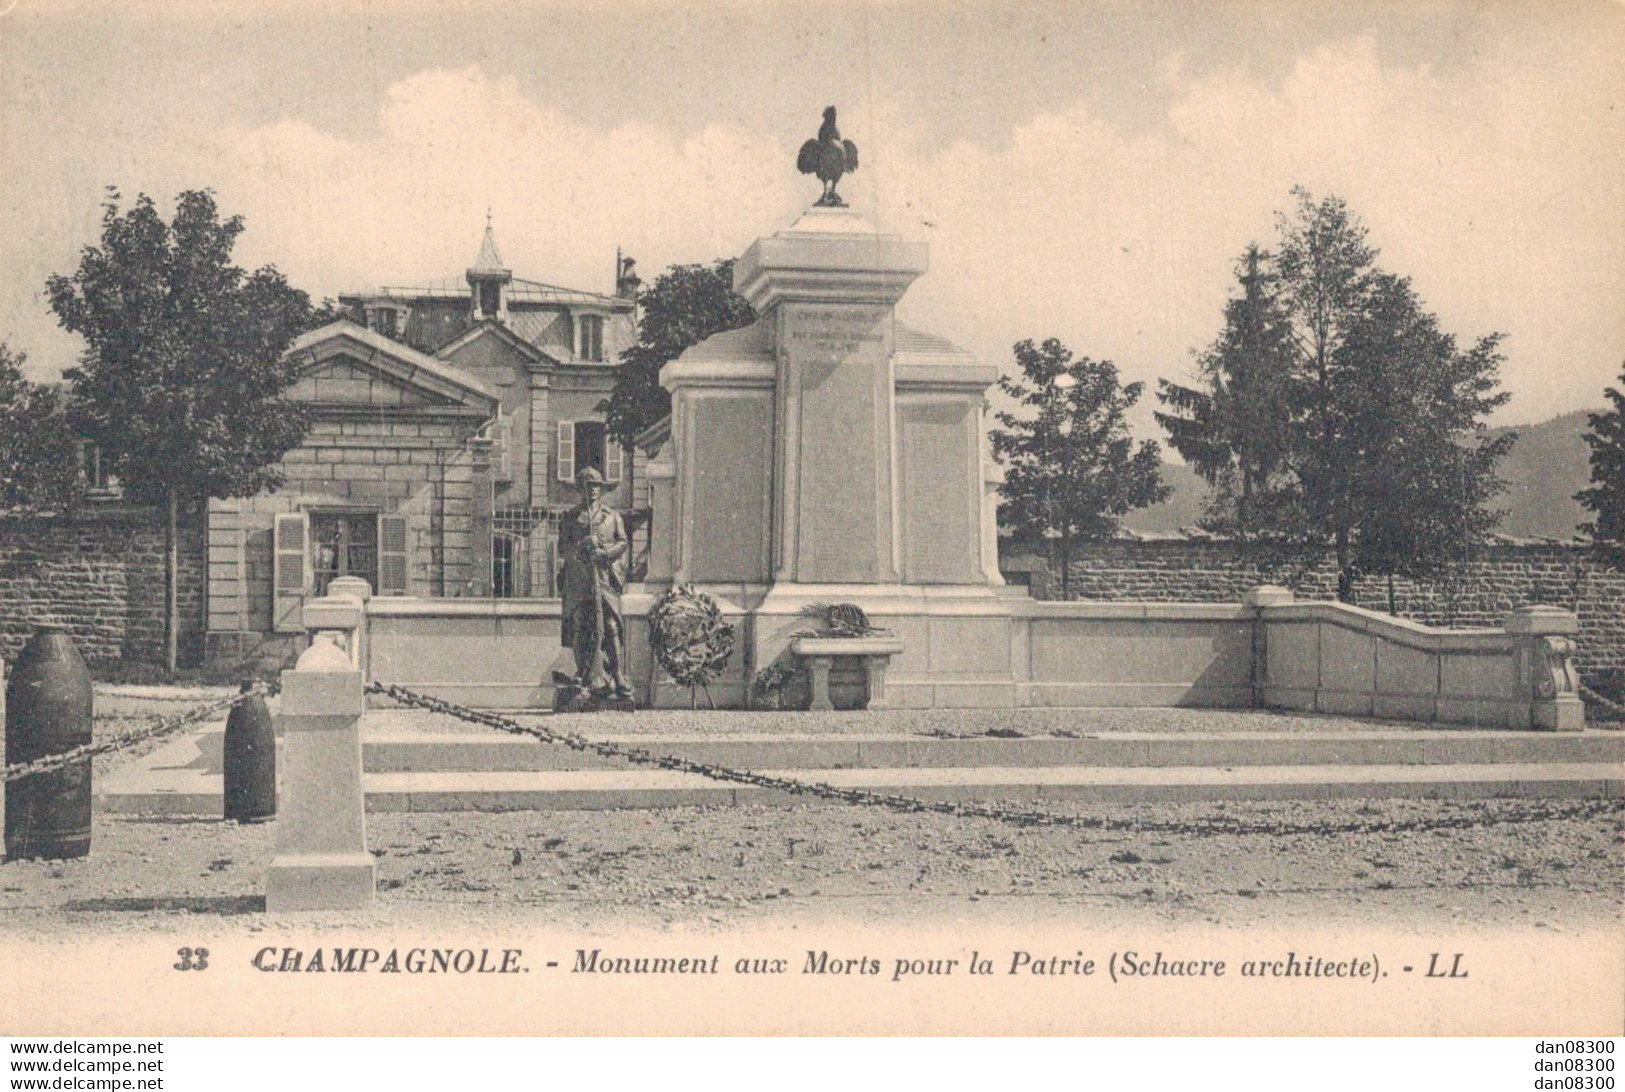 39 CHAMPAGNOLE MONUMENT AUX MORTS POUR LA PATRIE - Kriegerdenkmal